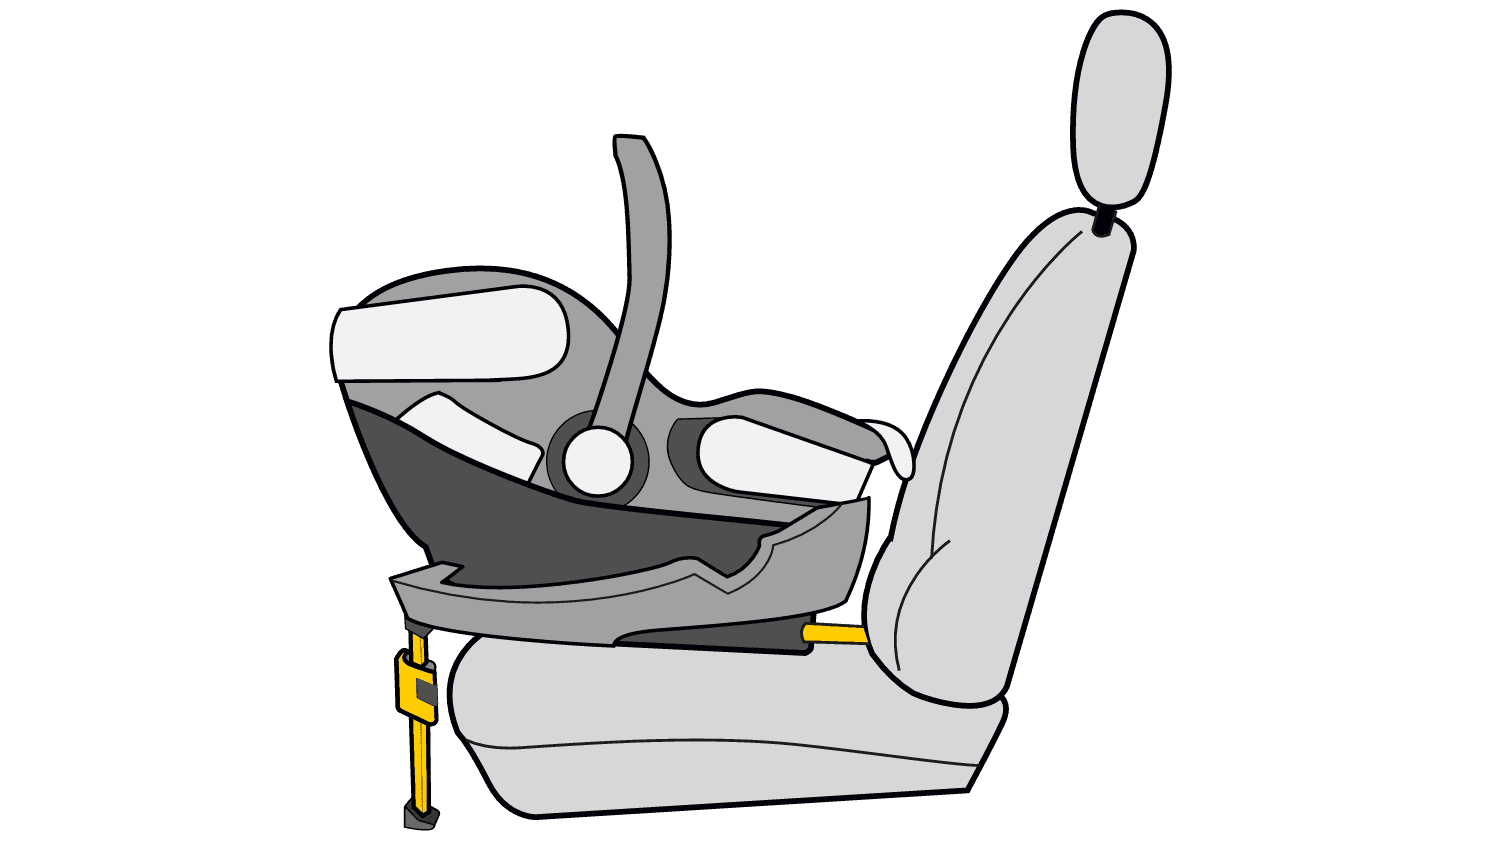 Isofix im Auto: Sichere Kindersitz-Halterung für Maxi-Cosi und Co - AUTO  BILD